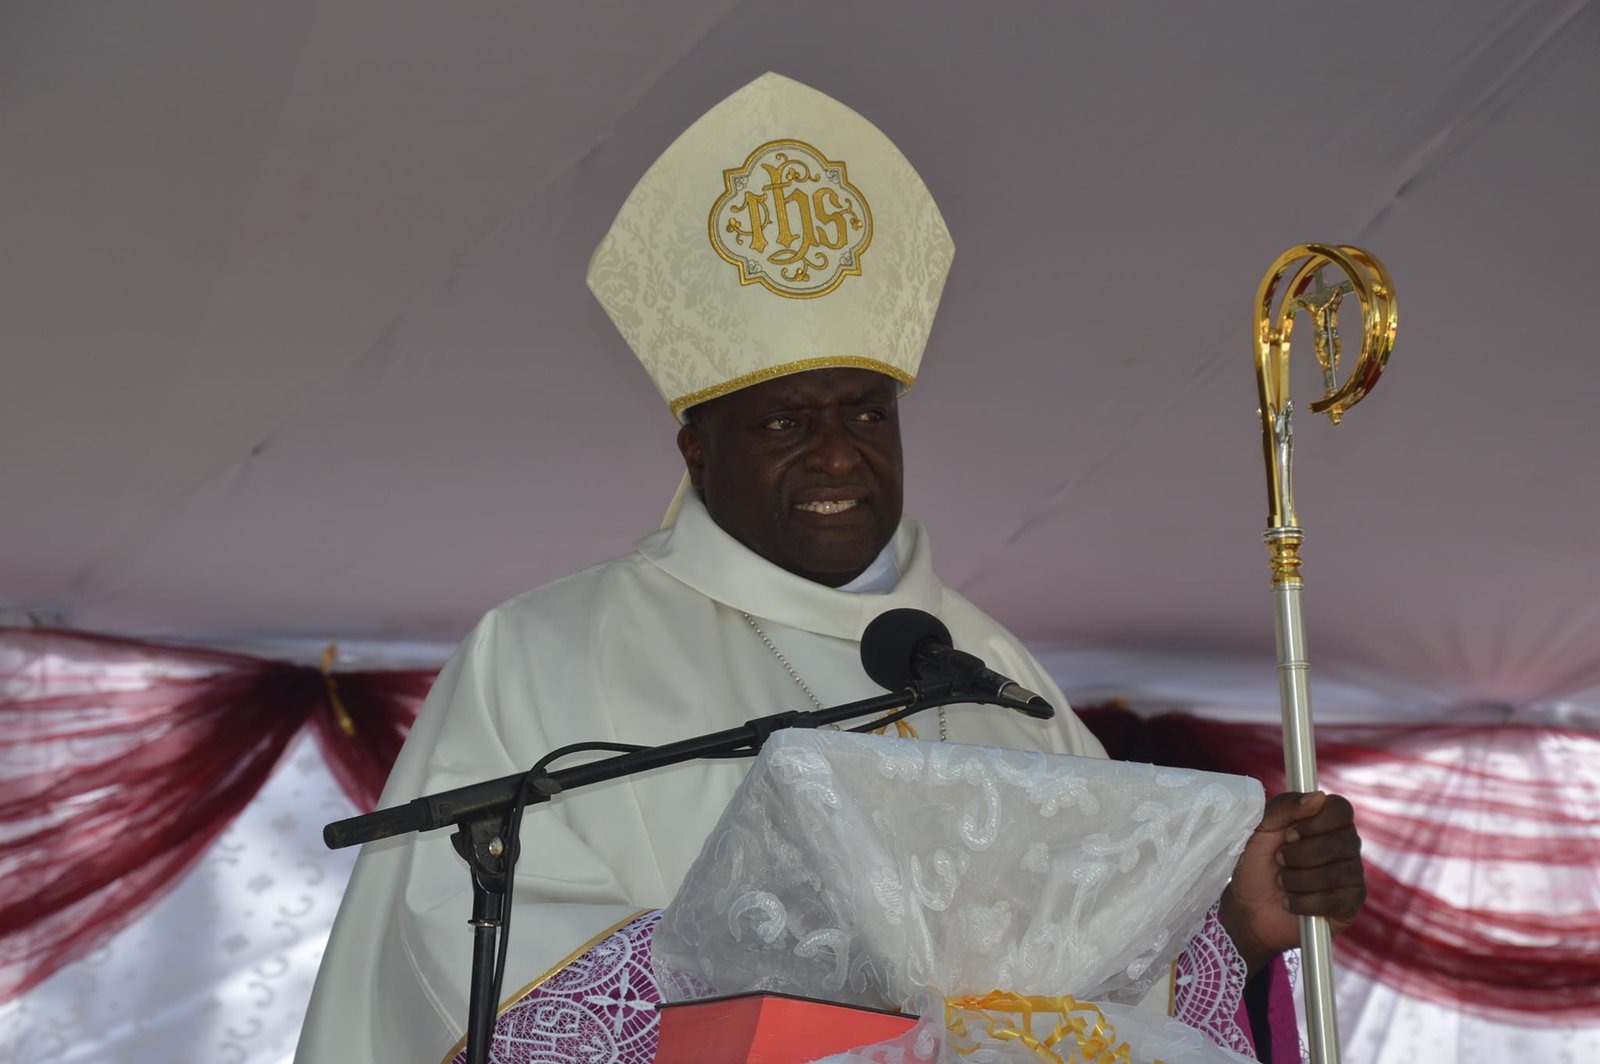 Bishop Mupandasekwa